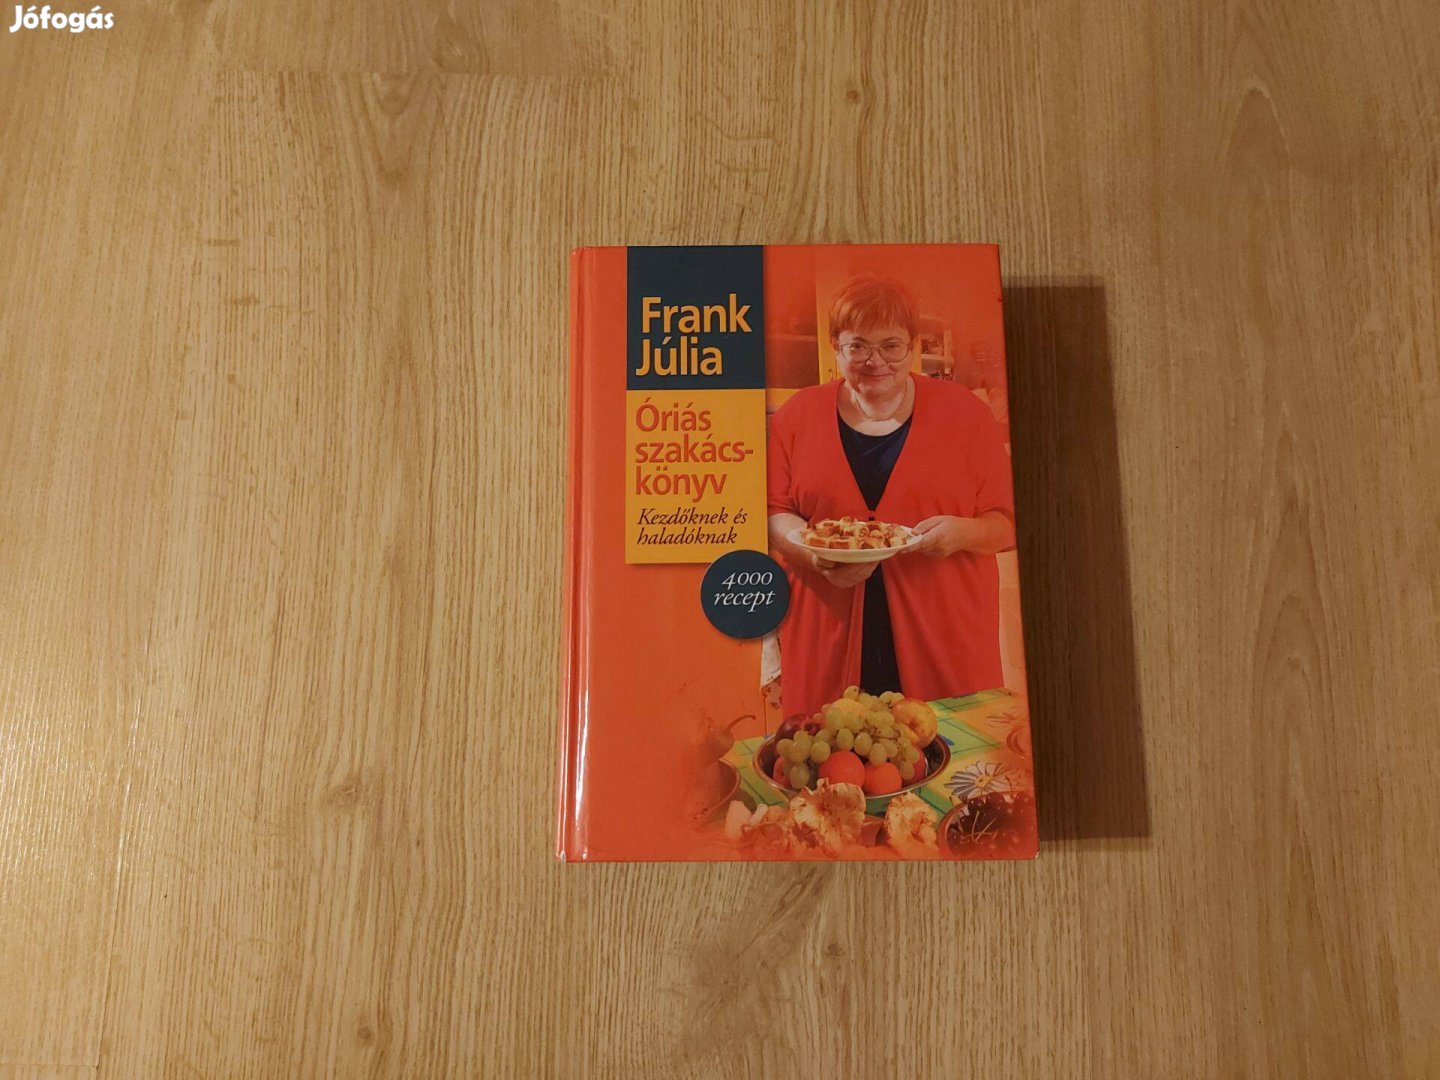 Frank Júlia: Óriás szakácskönyv kezdőknek és haladóknak